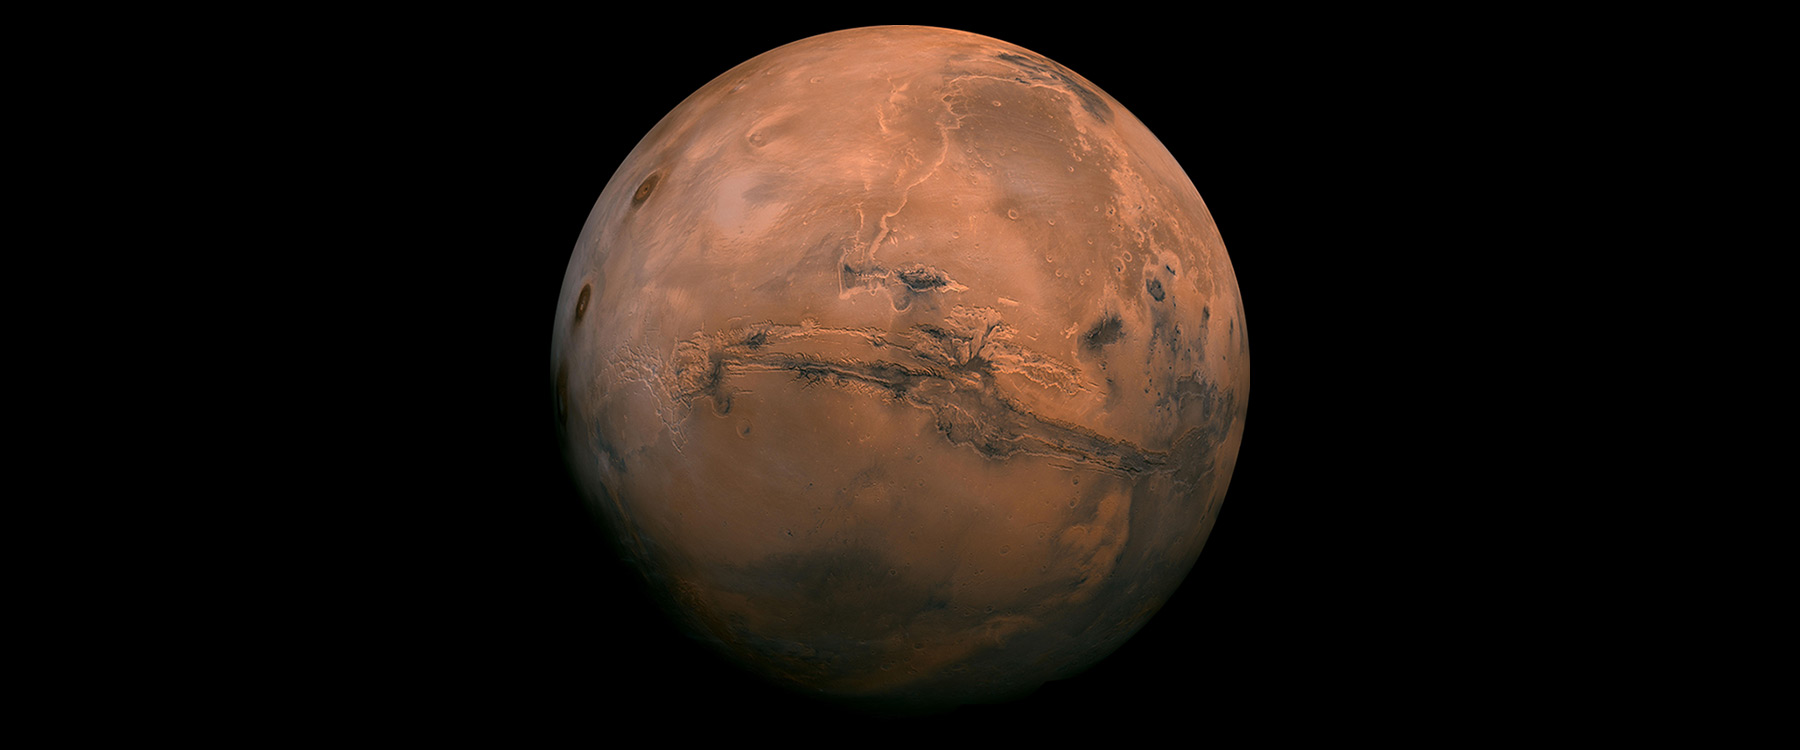 Mars. Image: NASA/Caltech